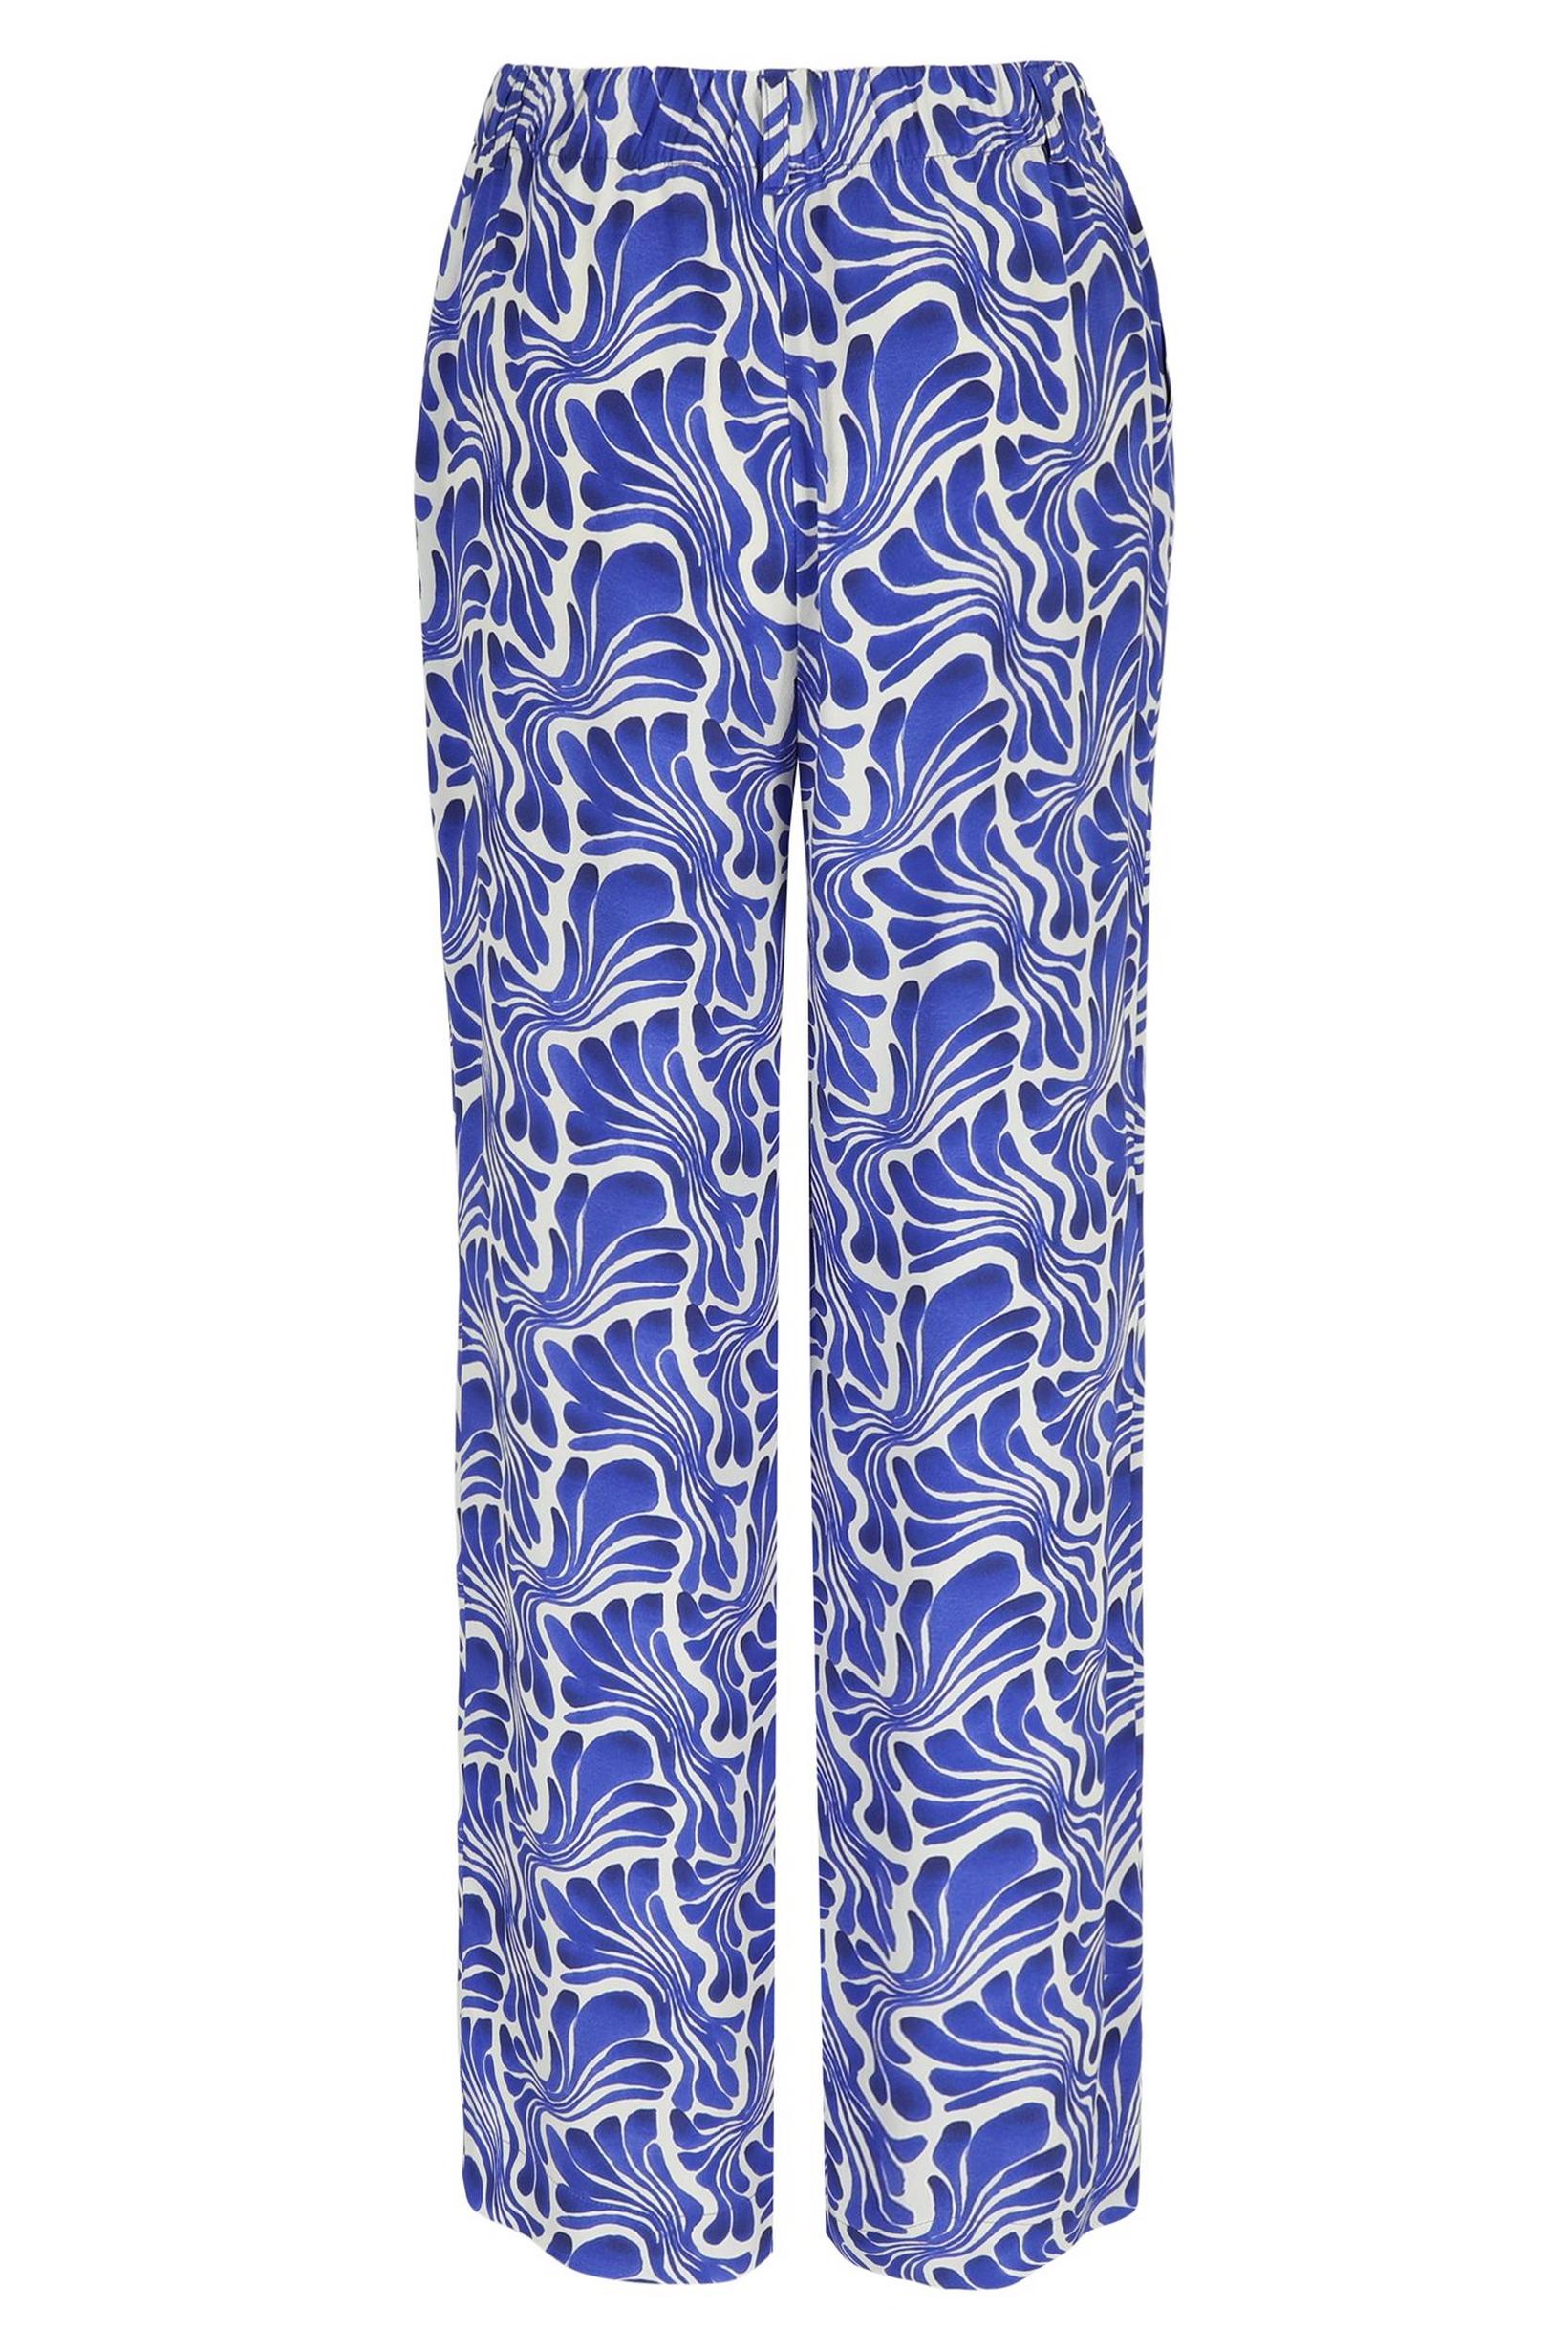 Pantalon Bleu Mayerline (Cedine 1331/983)